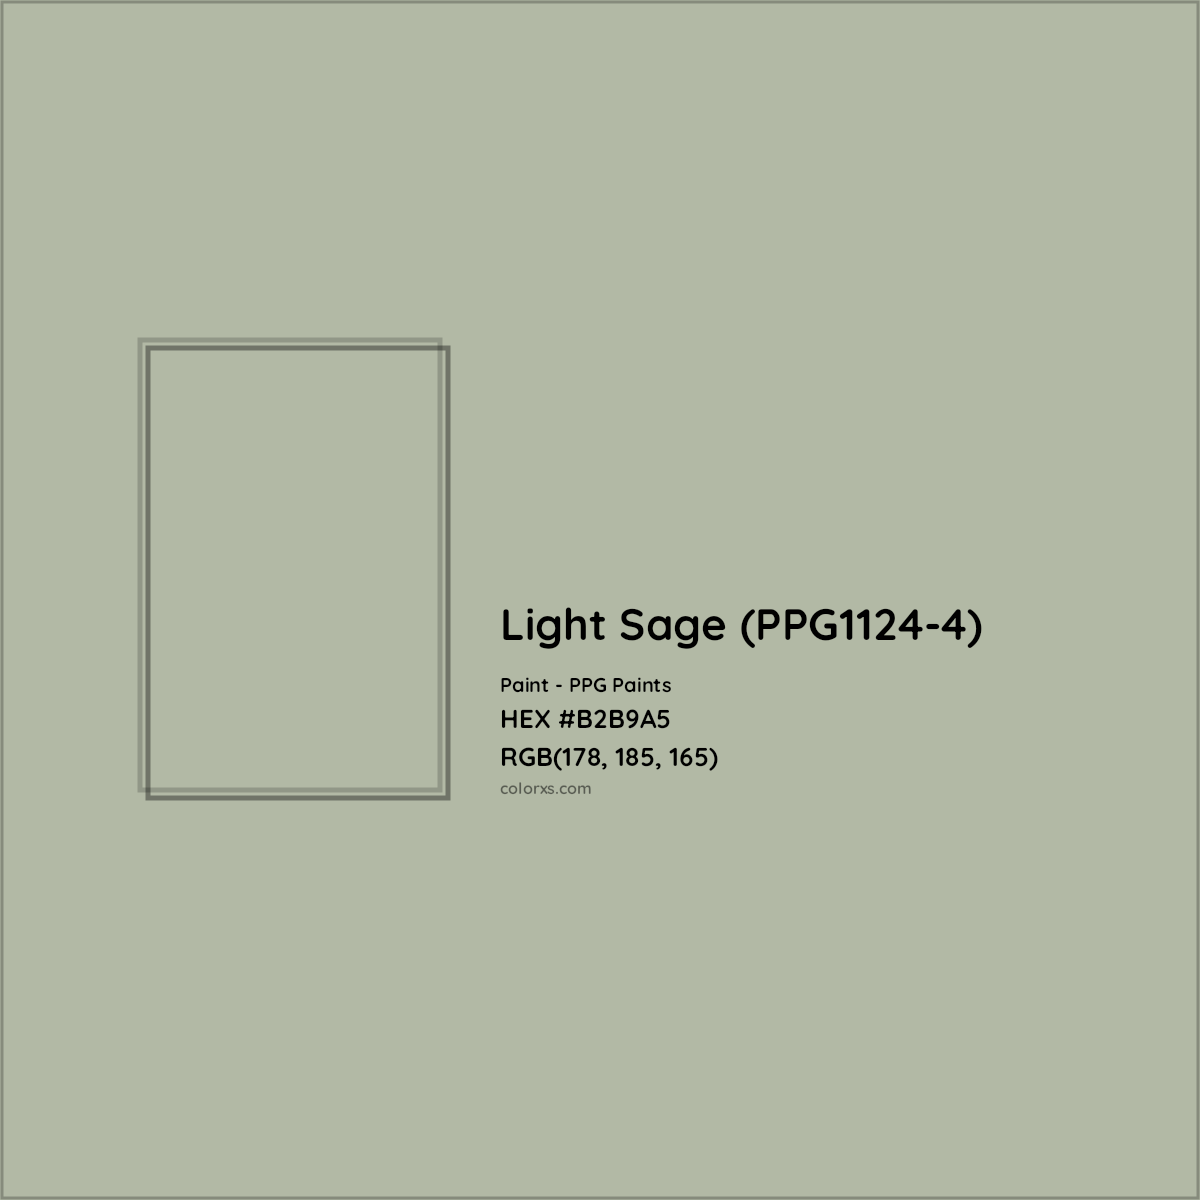 HEX #B2B9A5 Light Sage (PPG1124-4) Paint PPG Paints - Color Code